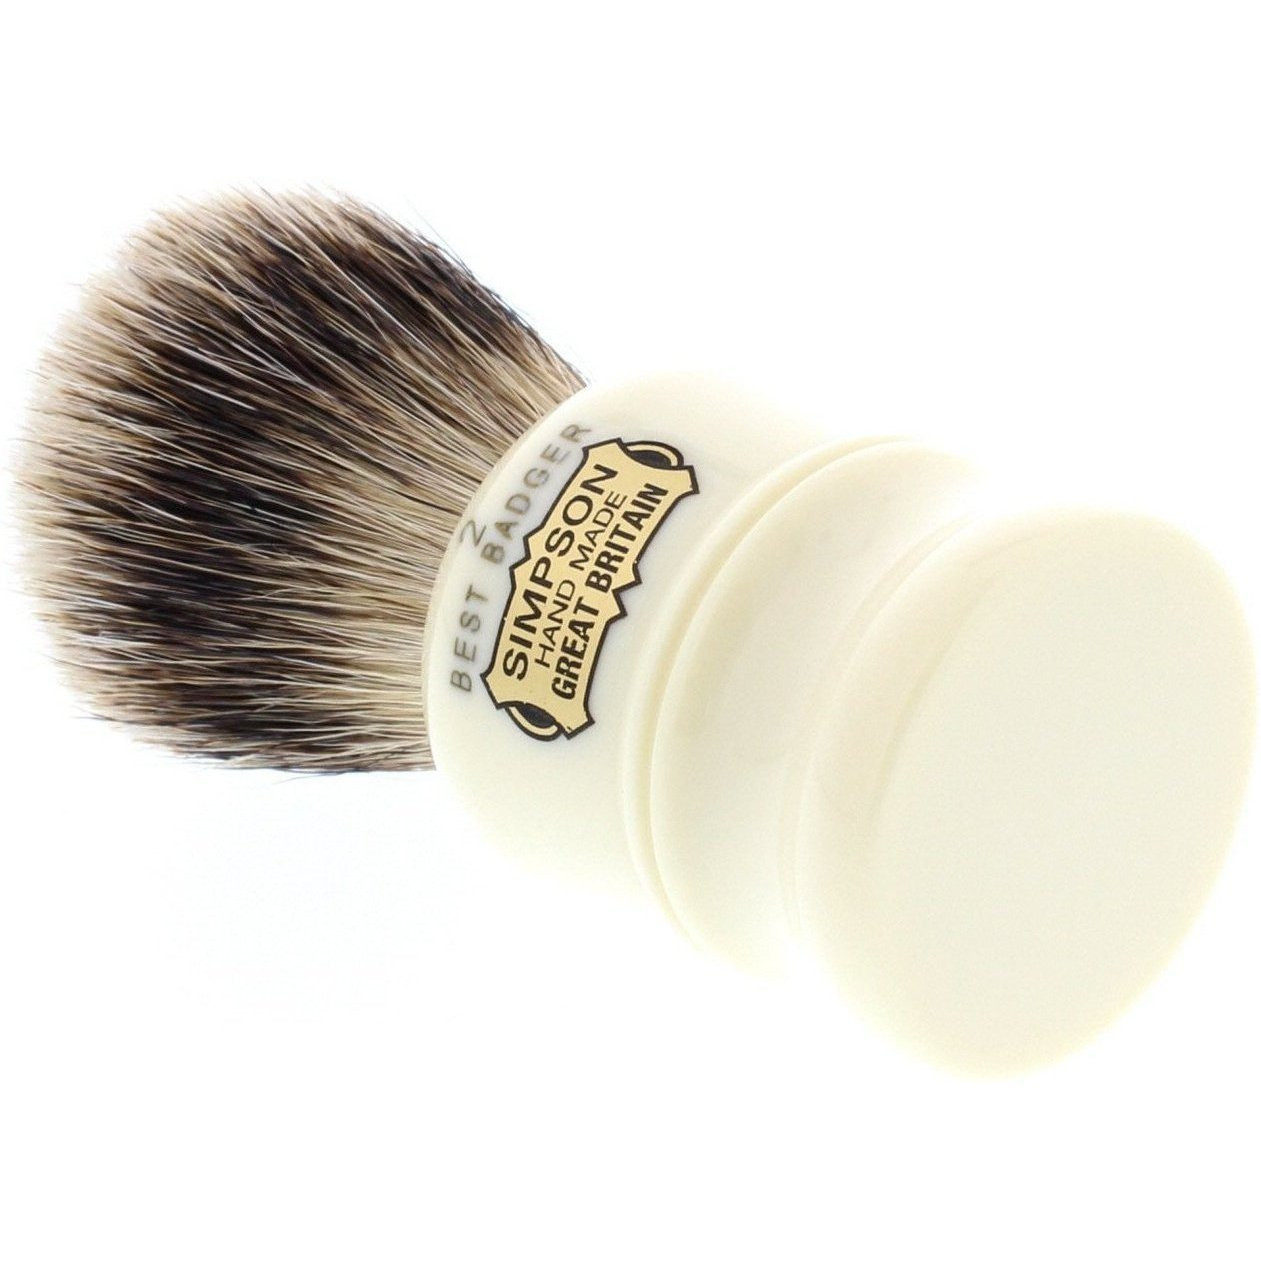 Product image 4 for Simpson Duke 2 Best Badger Shaving Brush D2